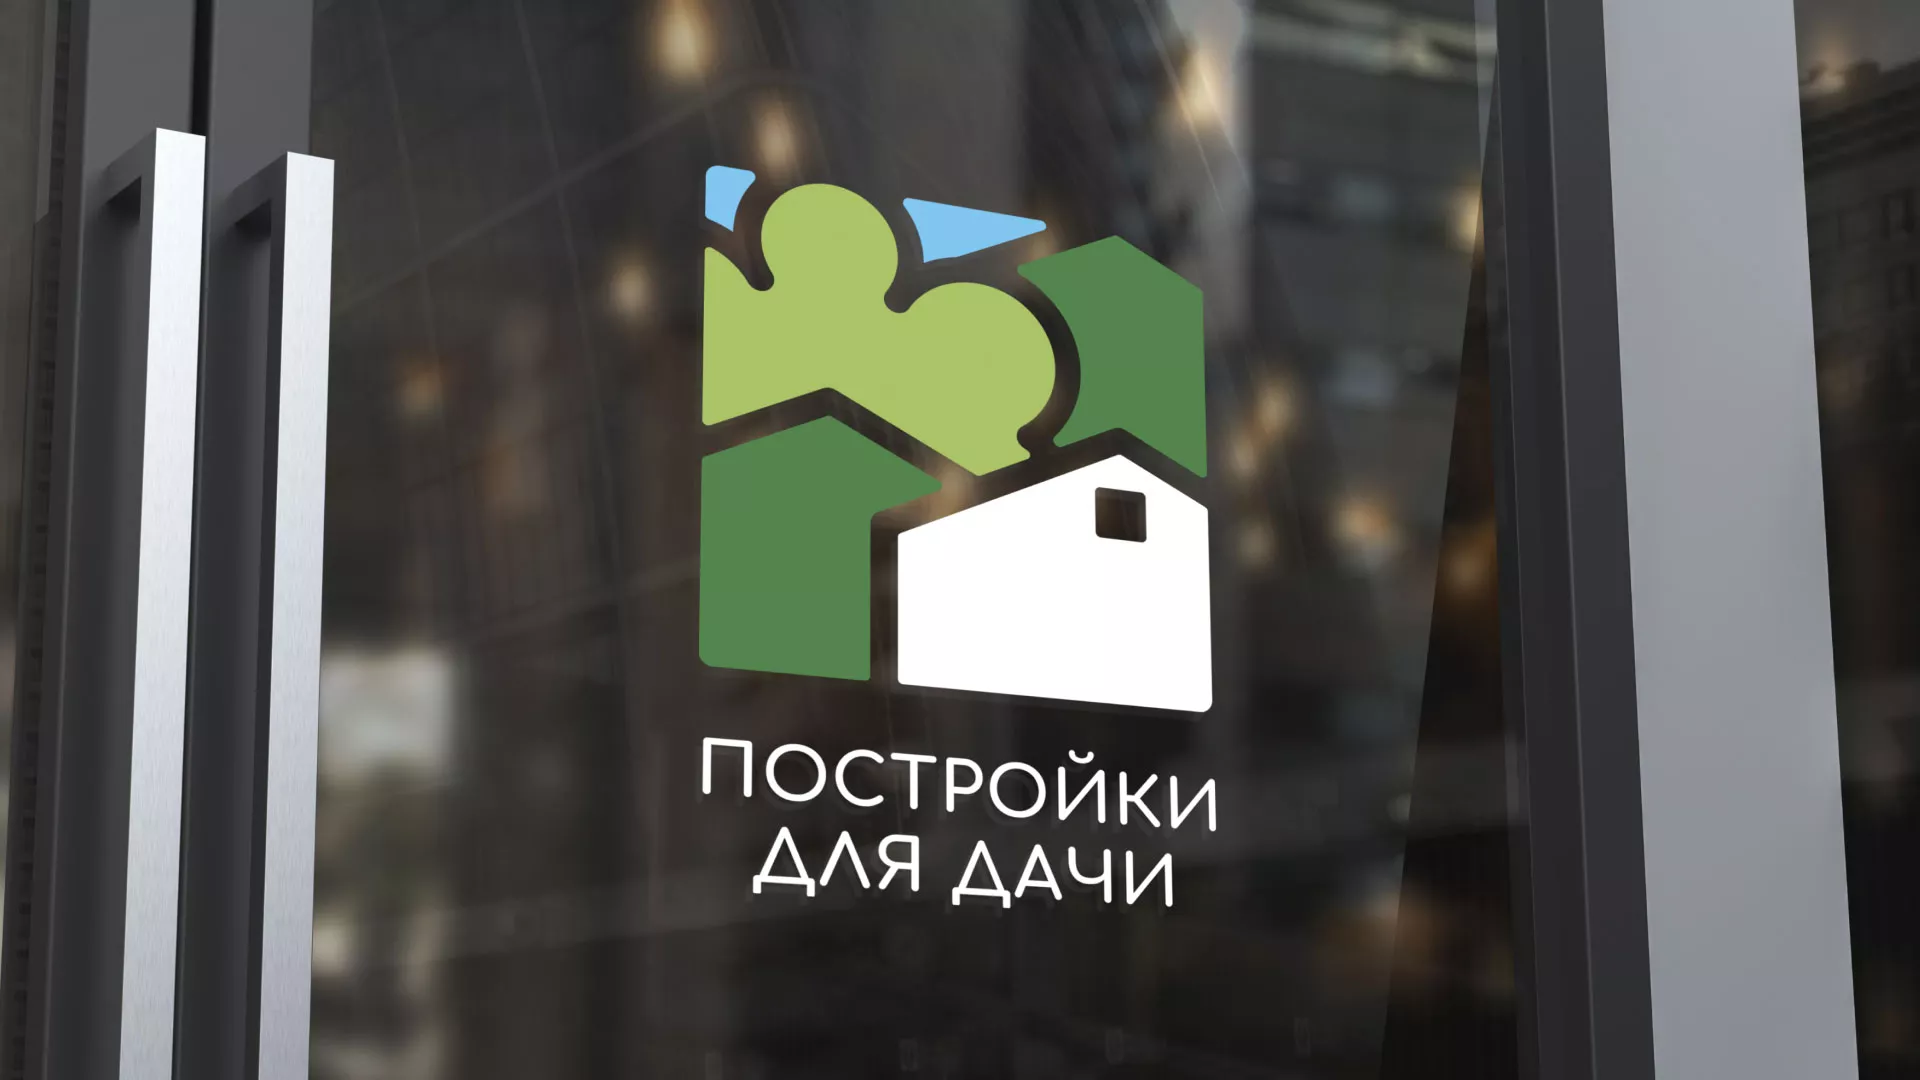 Разработка логотипа в Торжке для компании «Постройки для дачи»